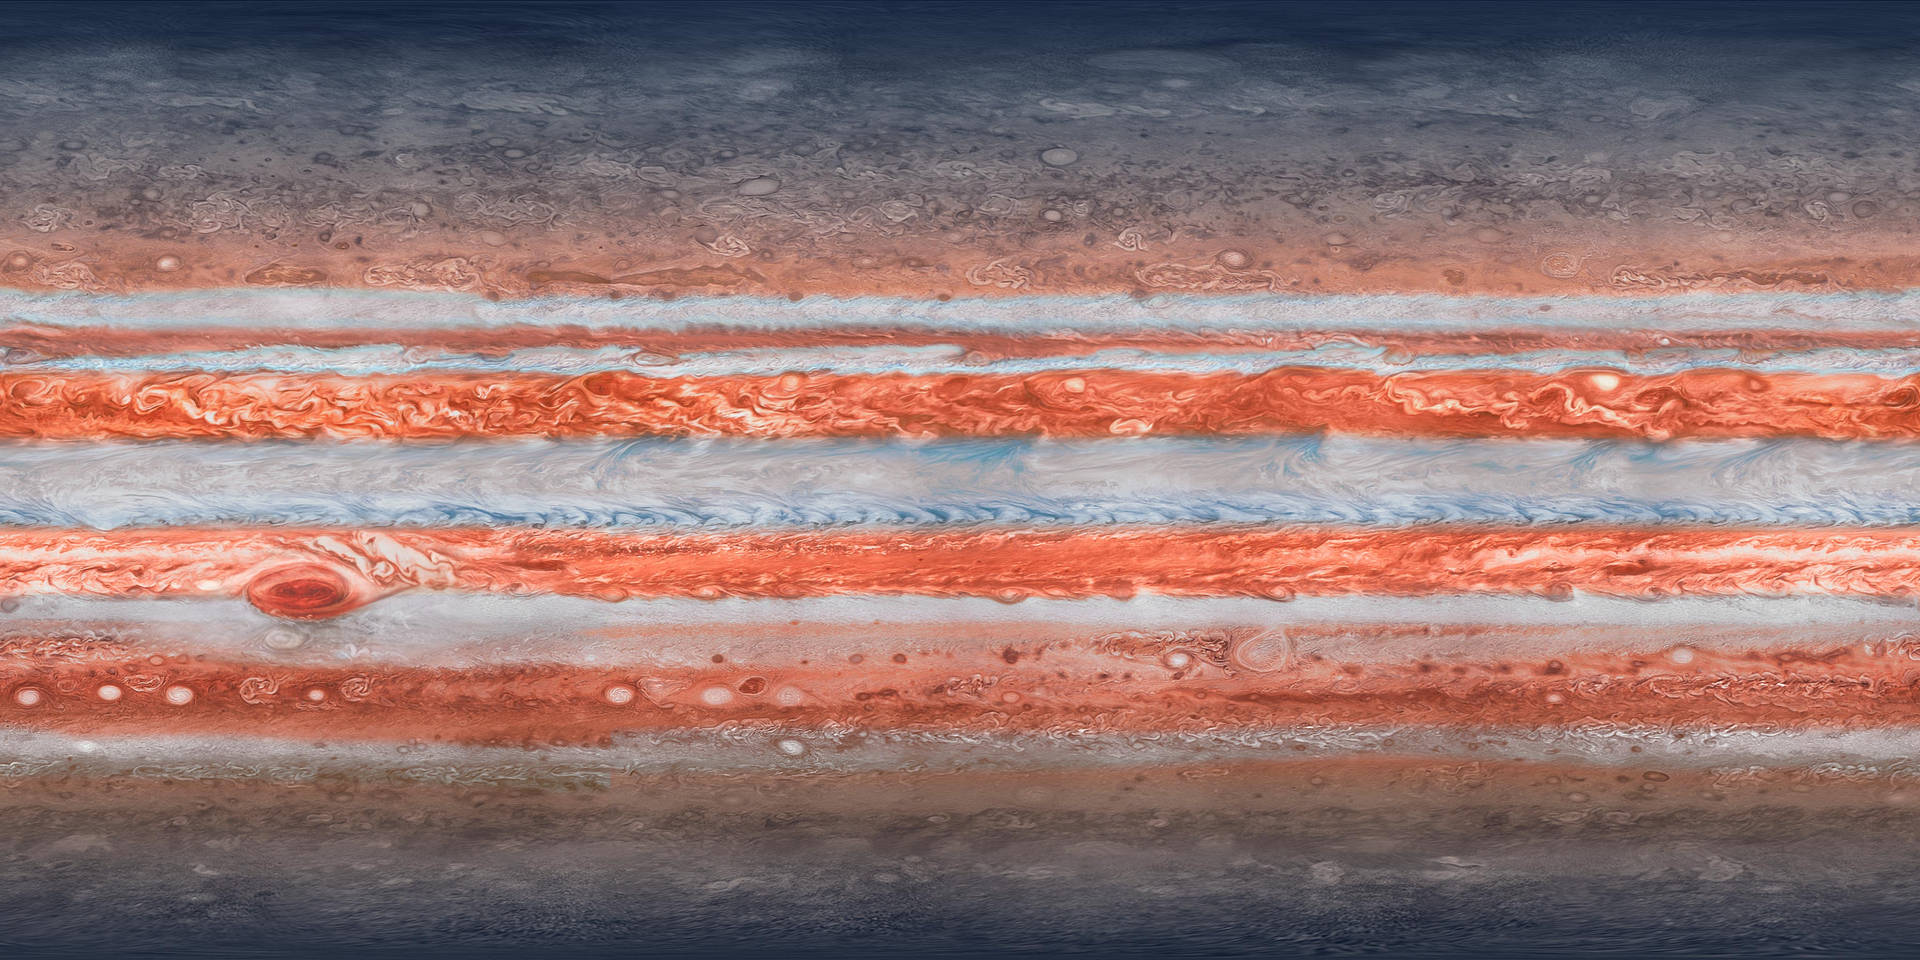 Ipad Pro Jupiter Surface Wallpaper